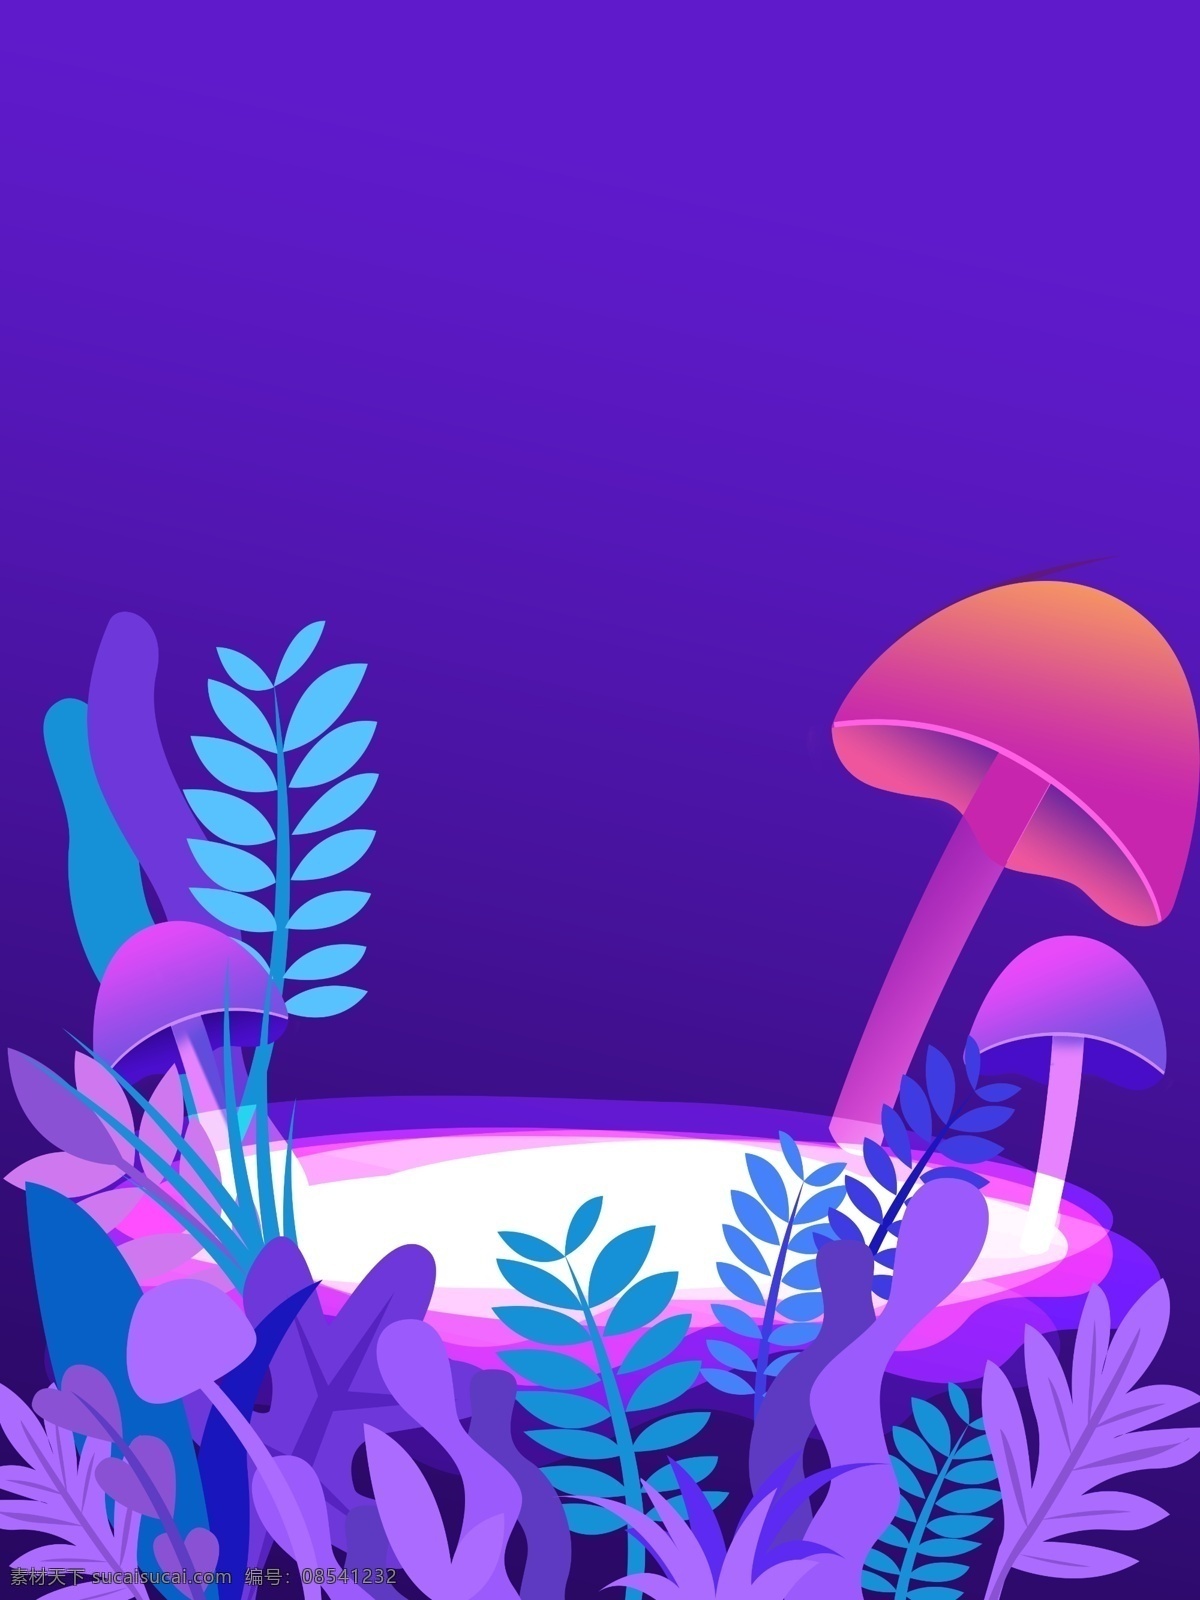 梦境 紫色 花卉 植物 插画 背景 紫色背景 梦境背景 花卉背景 森系 小清新背景 植物花卉 水彩背景